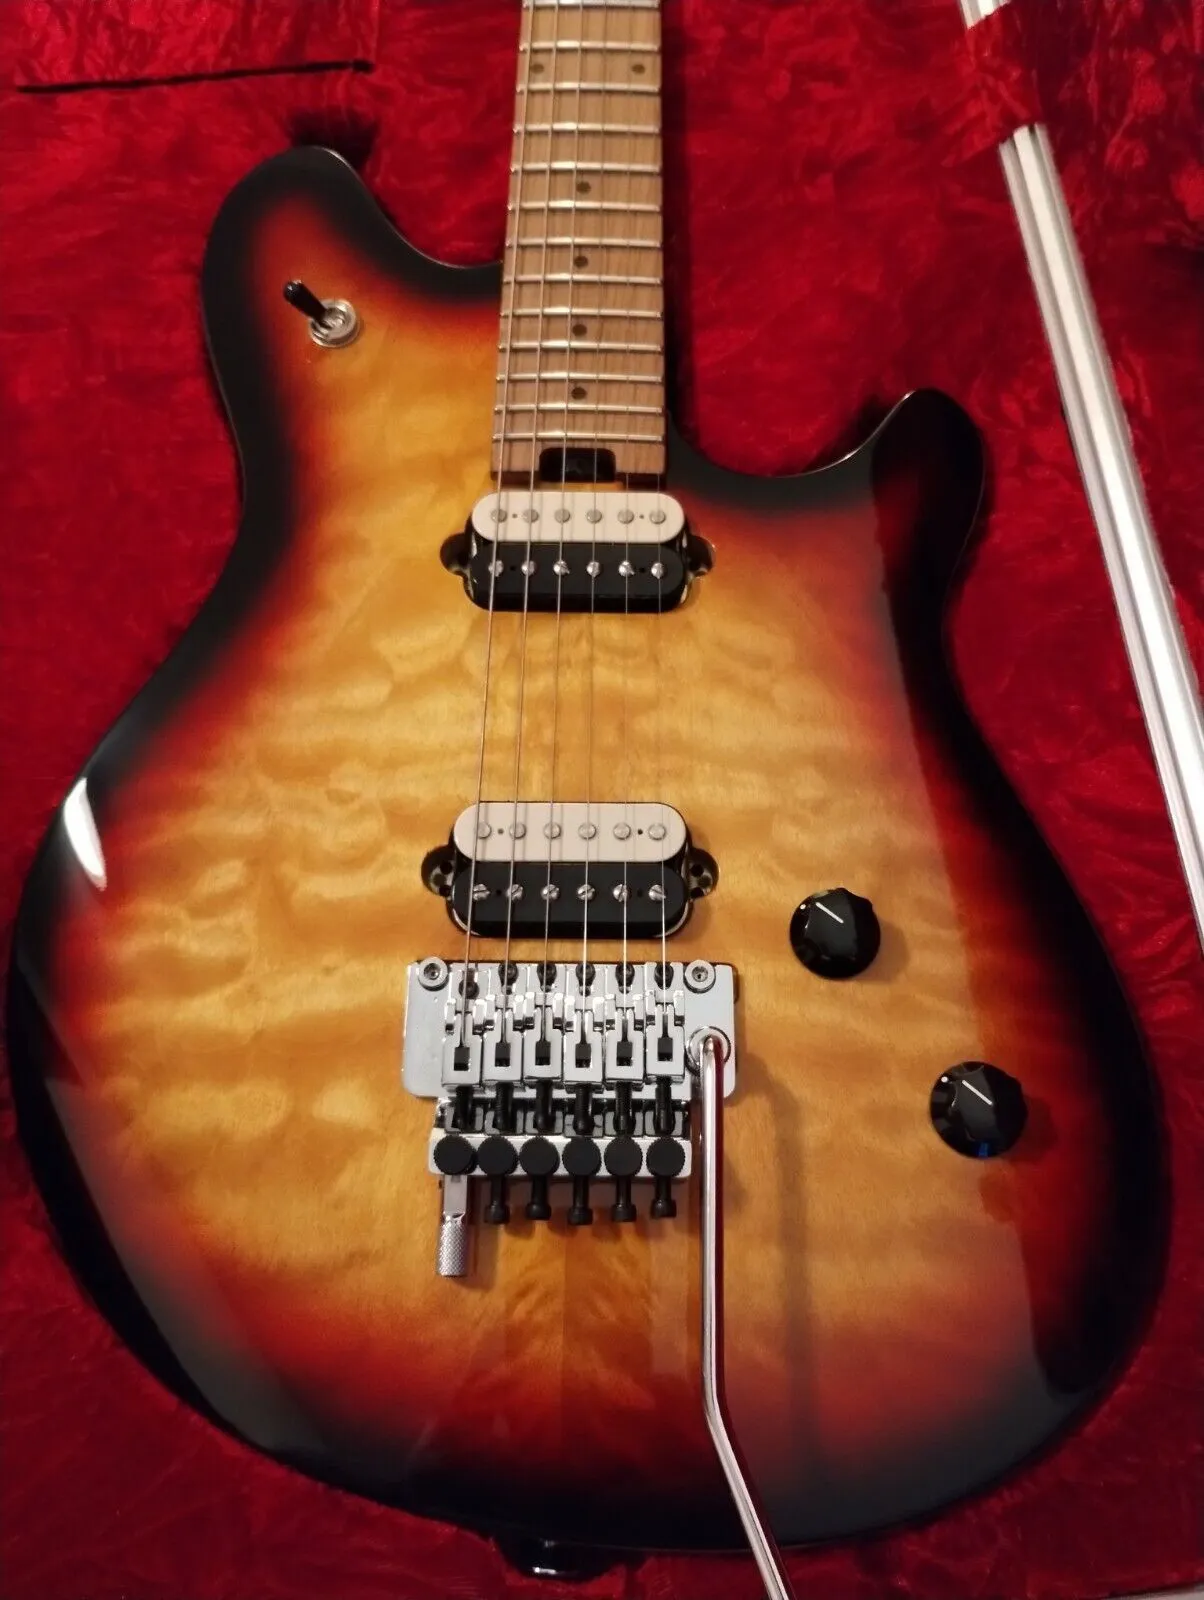 Standard 3 -ton solbrastgitarr som samma av bilderna elektriska gitarr